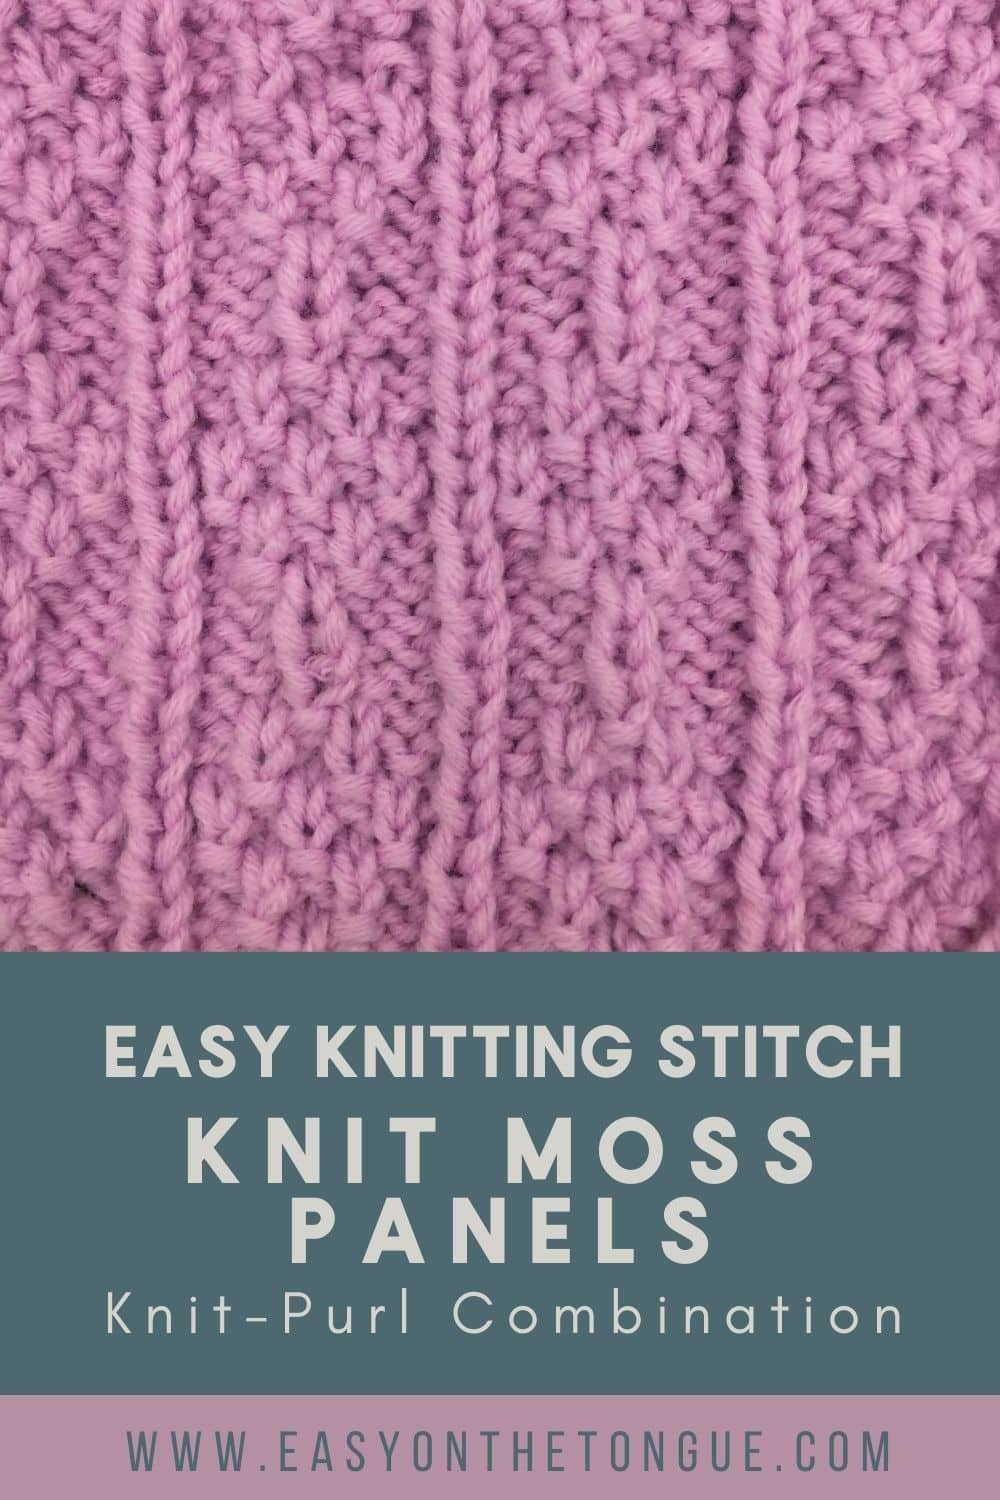 How to Knit Moss Panels, Knitting Stitch Pattern